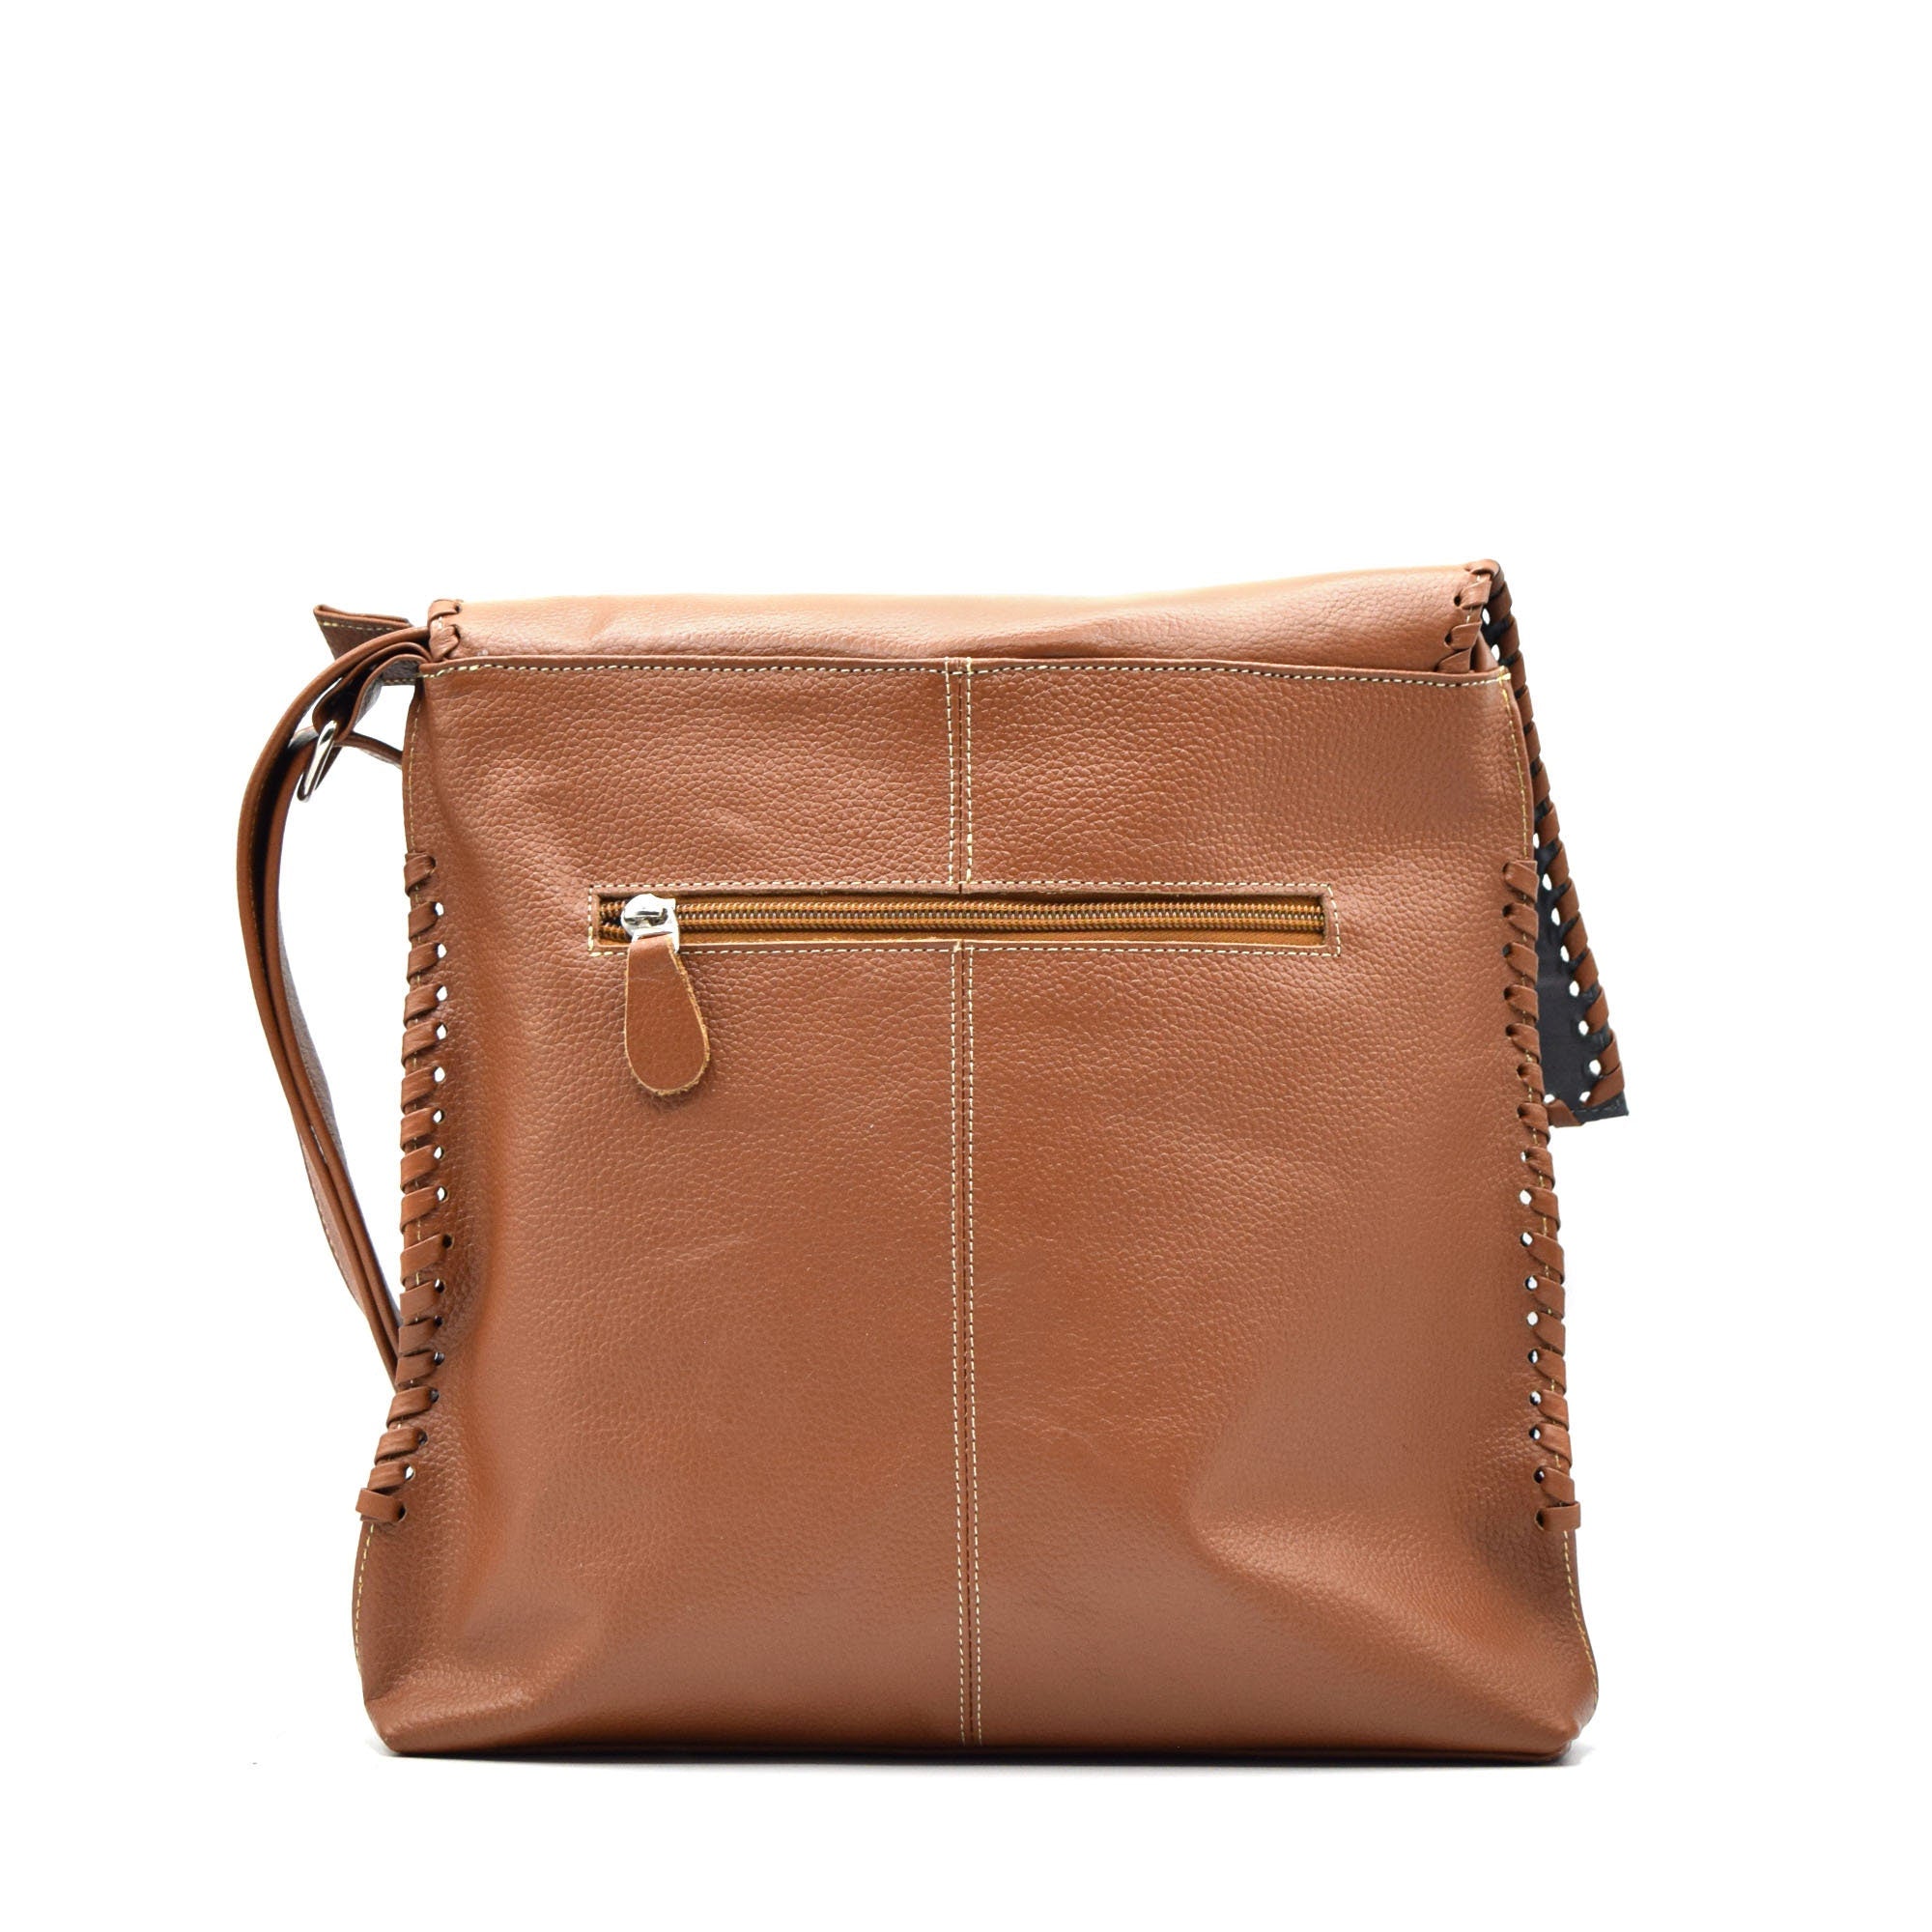 Leather Messenger Bag | Mola Appliqué | Gifts ideas for her | Boho Bag | Shoulder Bag | Crossbody Bag | Hippie Bag